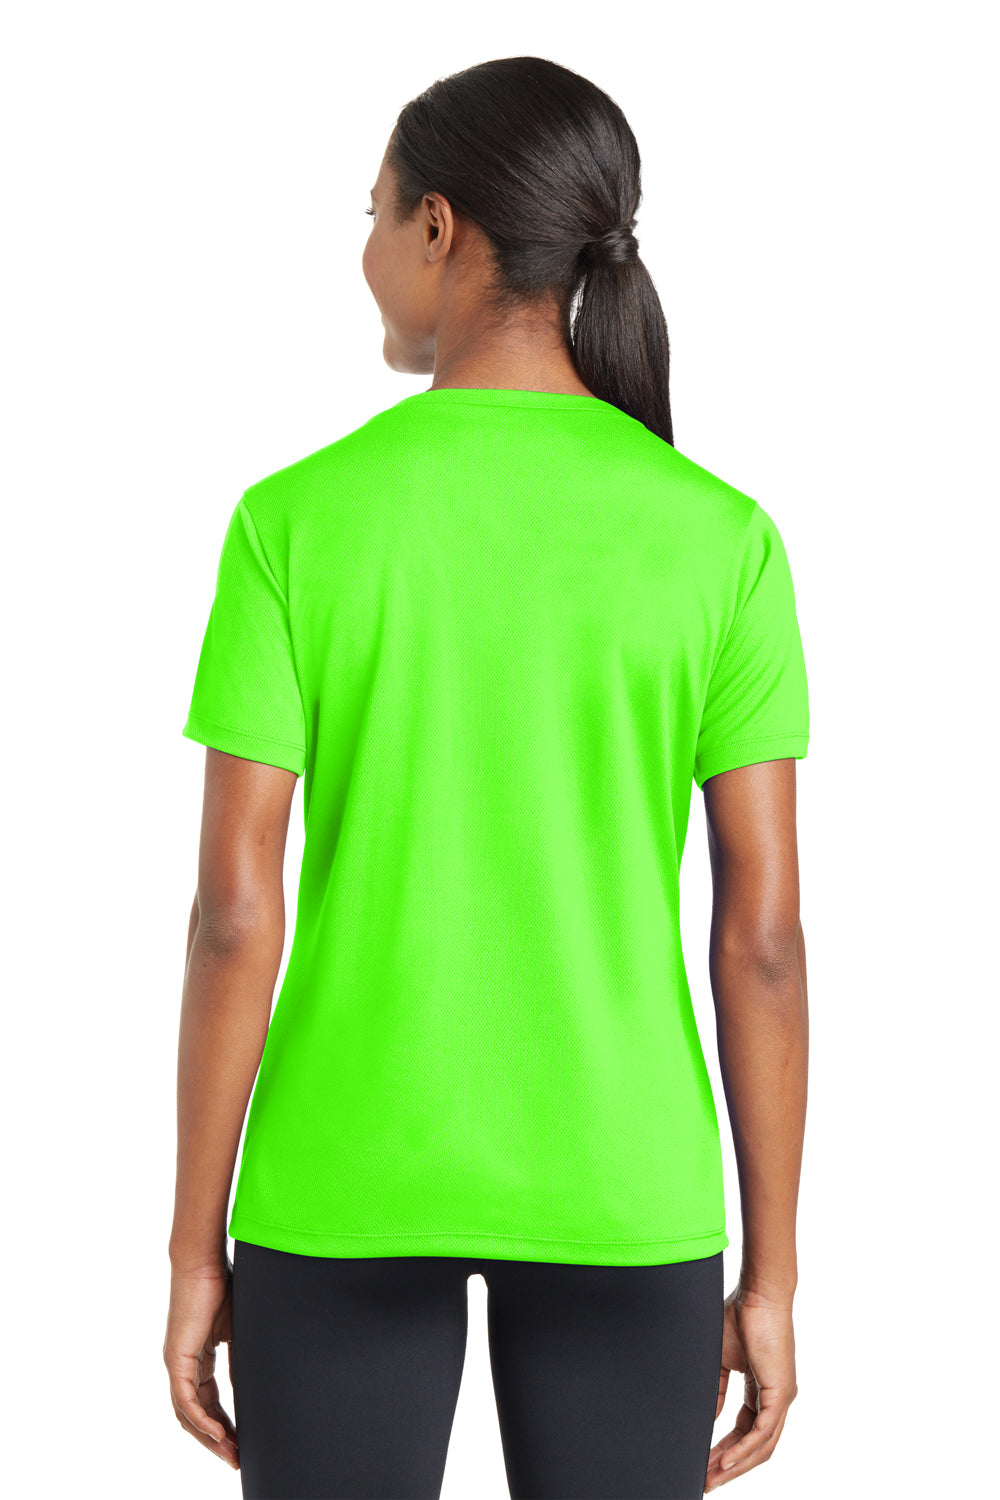 Sport-Tek LST340 Womens Moisture Green Neon T-Shirt V-Neck Wicking — RacerMesh Sleeve Short